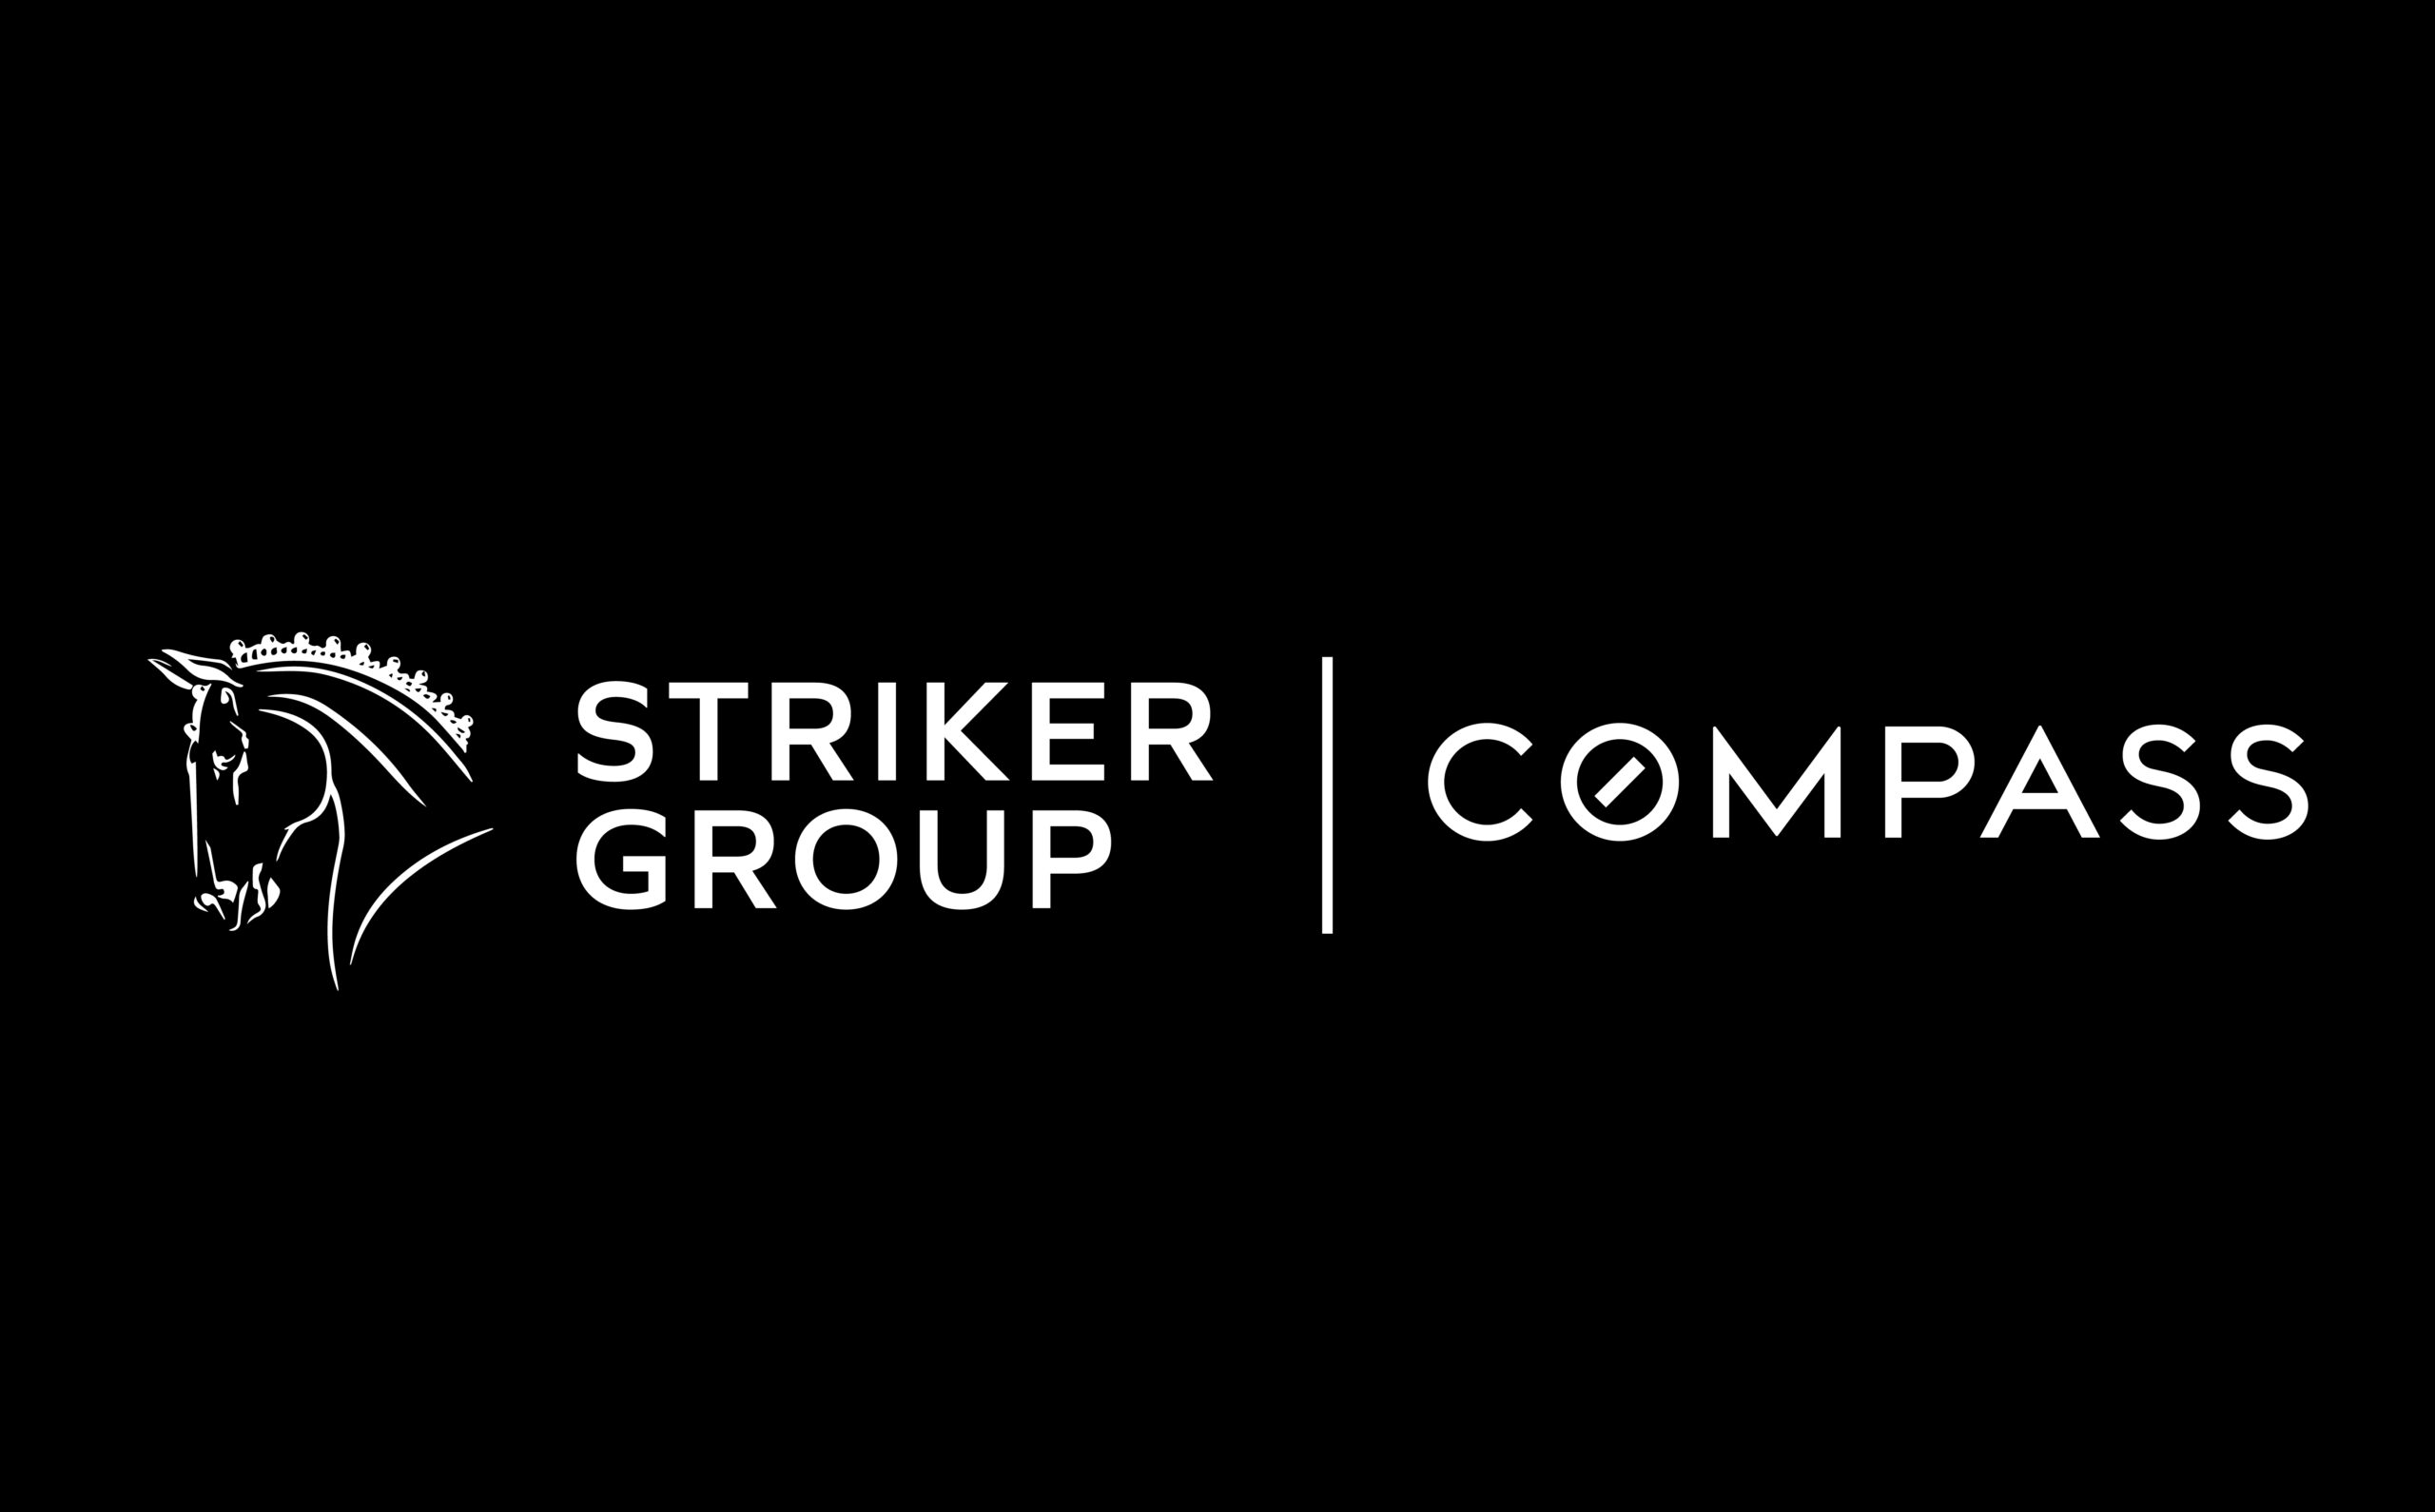 Striker Group Compass